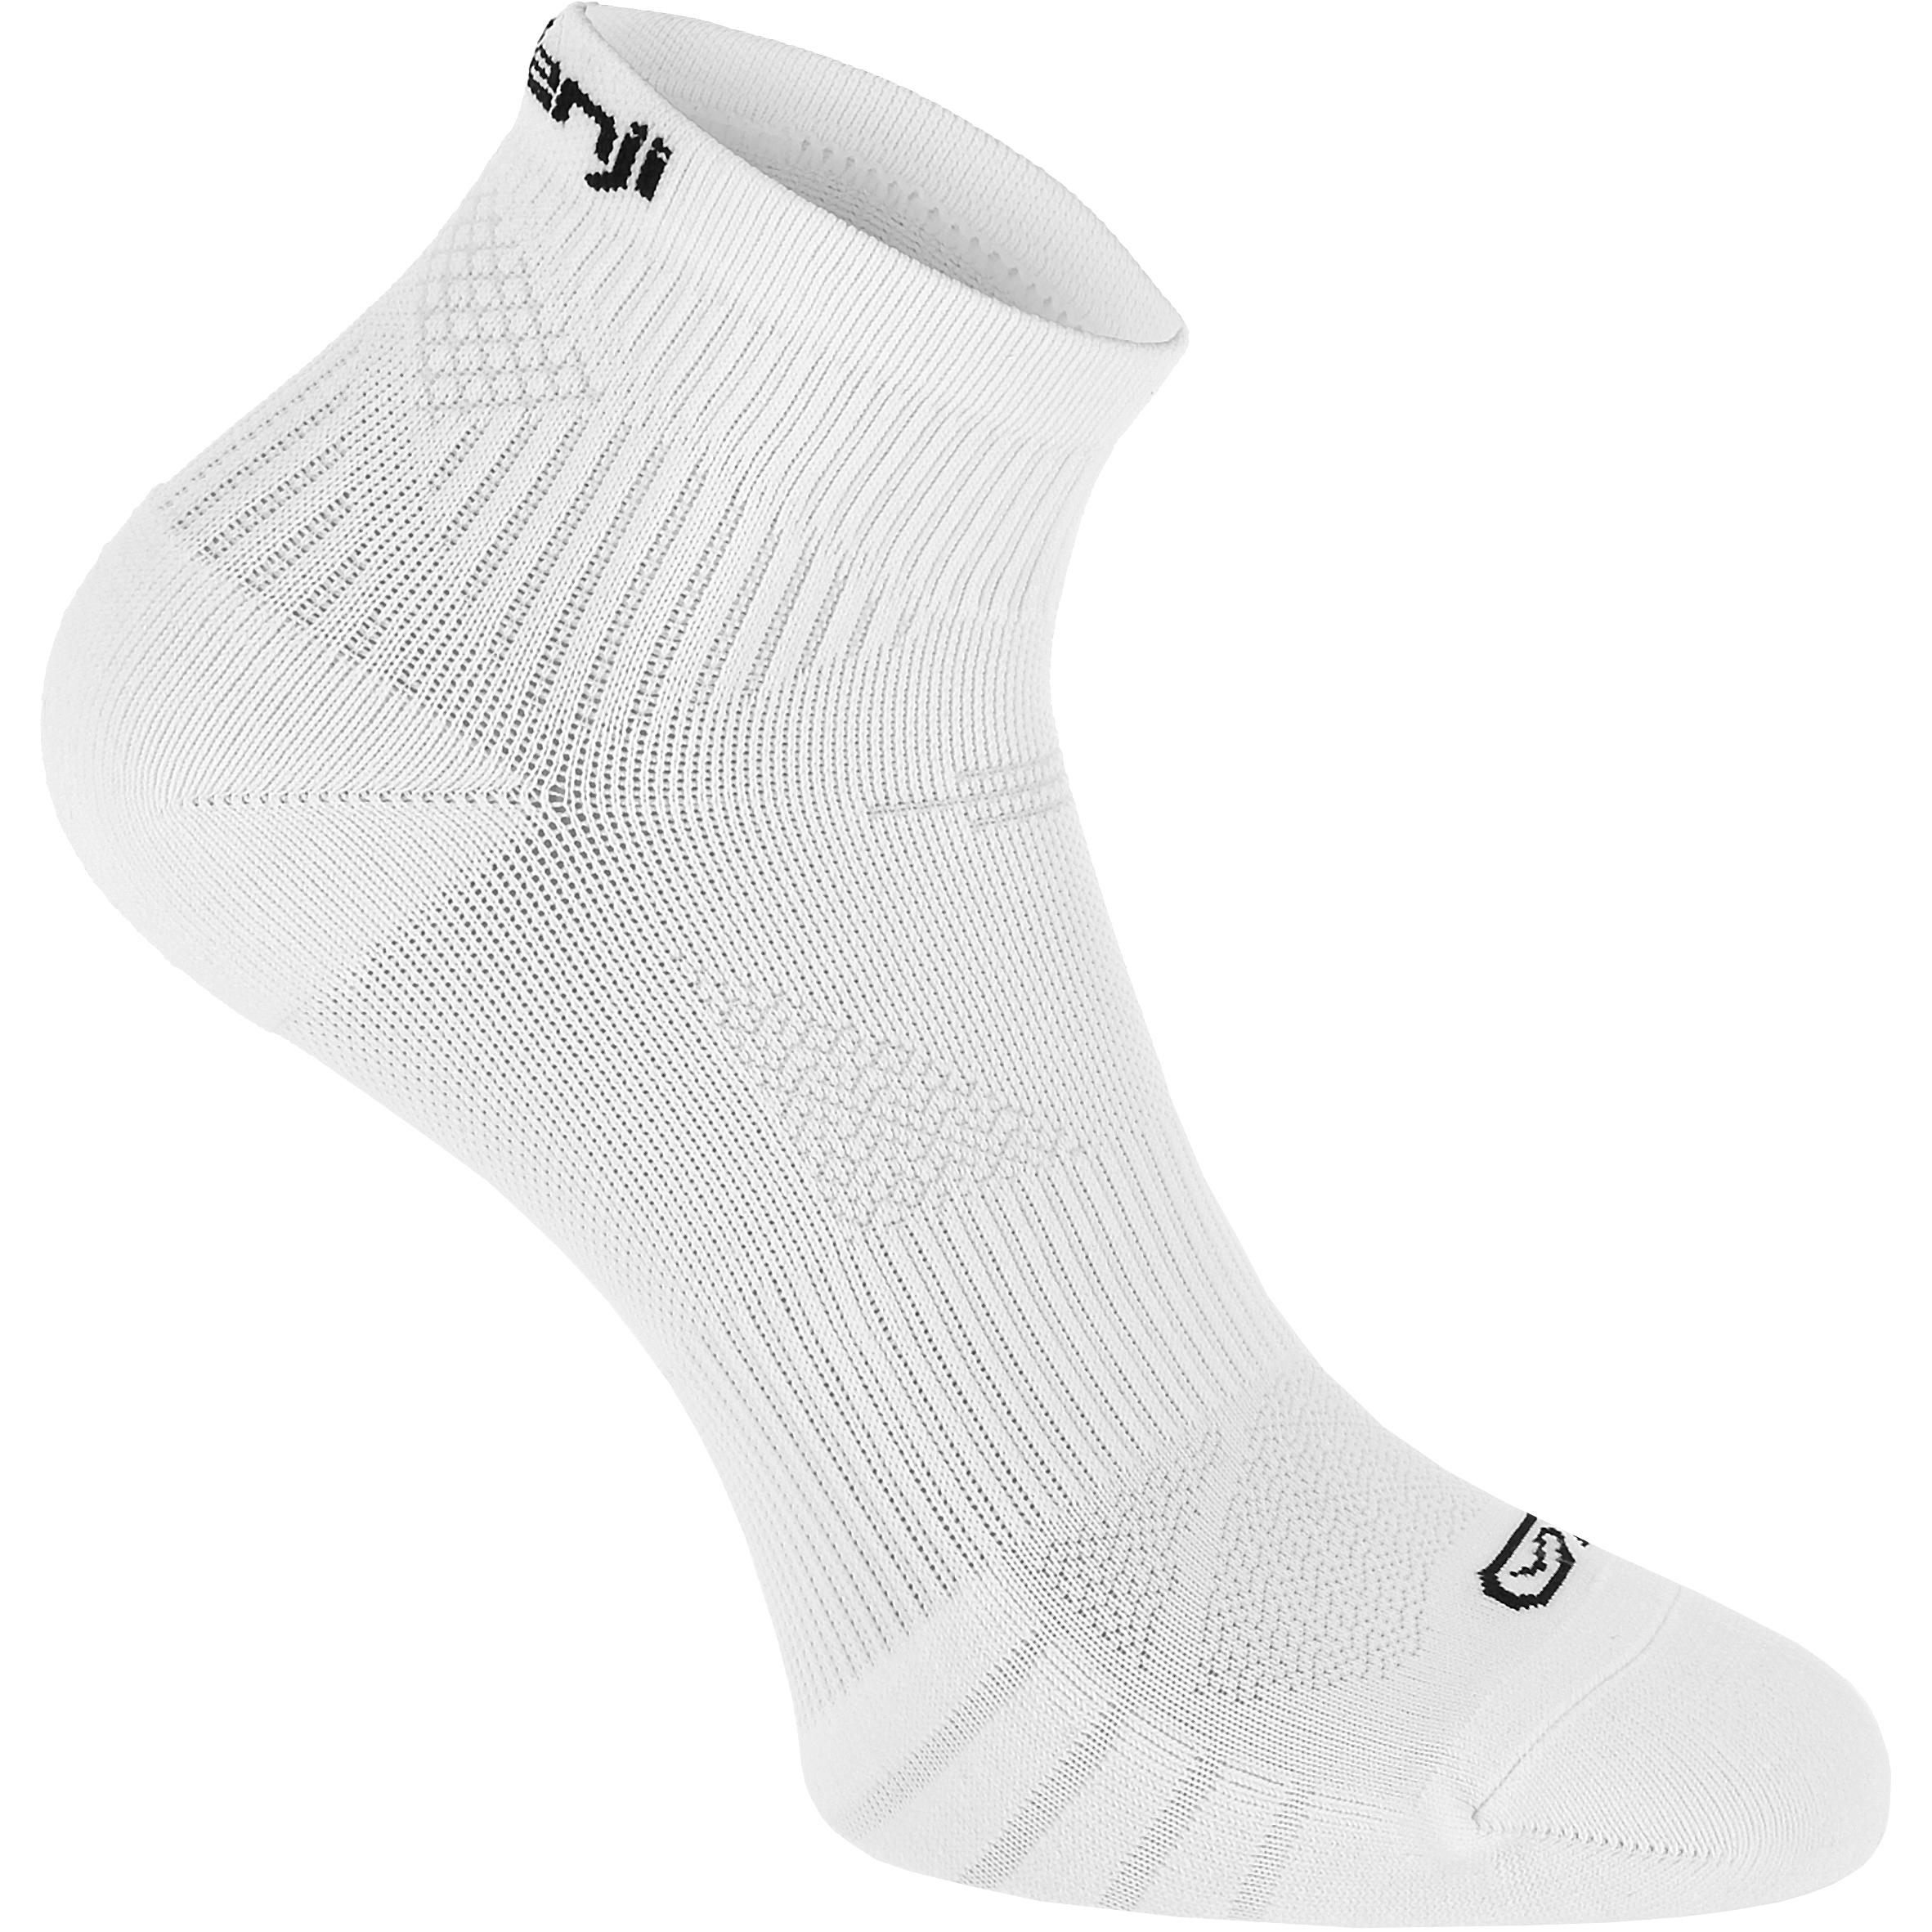 Buy Running Socks Online In India|Socks Eliofeel High White|Kalenji